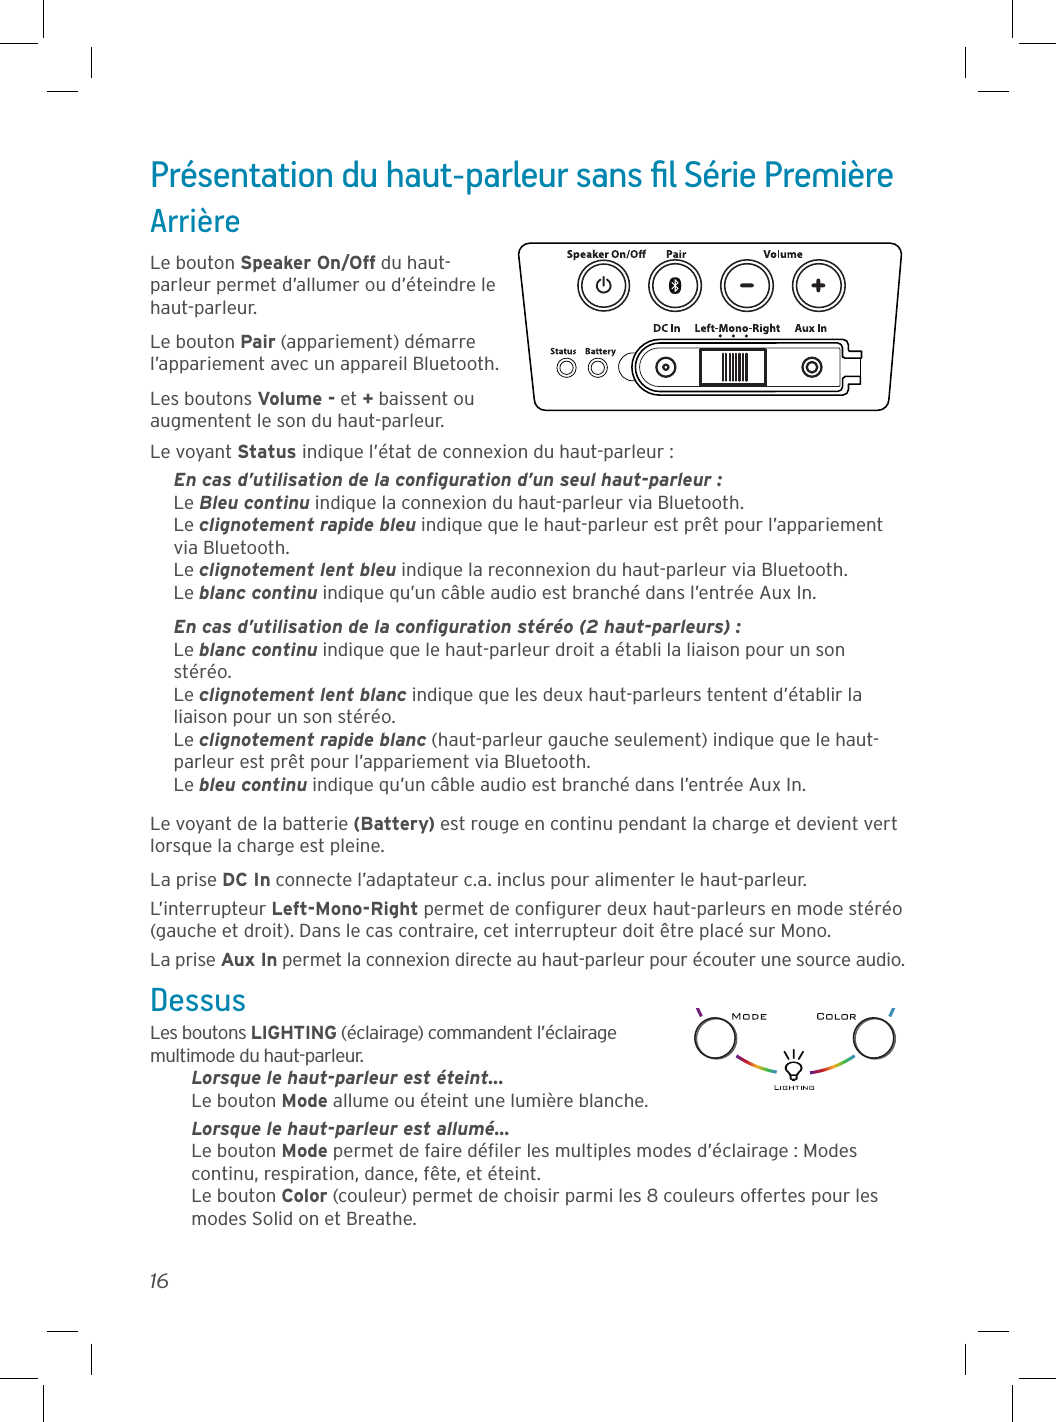 16Présentation du haut-parleur sans ﬁl Série PremièreArrièreLe bouton Speaker On/Off du haut-parleur permet d’allumer ou d’éteindre le haut-parleur.Le bouton Pair (appariement) démarre l’appariement avec un appareil Bluetooth.Les boutons Volume - et + baissent ou augmentent le son du haut-parleur.Le voyant Status indique l’état de connexion du haut-parleur :En cas d’utilisation de la conﬁguration d’un seul haut-parleur :Le Bleu continu indique la connexion du haut-parleur via Bluetooth.Le clignotement rapide bleu indique que le haut-parleur est prêt pour l’appariement via Bluetooth.Le clignotement lent bleu indique la reconnexion du haut-parleur via Bluetooth.Le blanc continu indique qu’un câble audio est branché dans l’entrée Aux In.En cas d’utilisation de la conﬁguration stéréo (2 haut-parleurs) : Le blanc continu indique que le haut-parleur droit a établi la liaison pour un son stéréo. Le clignotement lent blanc indique que les deux haut-parleurs tentent d’établir la liaison pour un son stéréo. Le clignotement rapide blanc (haut-parleur gauche seulement) indique que le haut-parleur est prêt pour l’appariement via Bluetooth. Le bleu continu indique qu’un câble audio est branché dans l’entrée Aux In.Le voyant de la batterie (Battery) est rouge en continu pendant la charge et devient vert lorsque la charge est pleine.La prise DC In connecte l’adaptateur c.a. inclus pour alimenter le haut-parleur.L’interrupteur Left-Mono-Right permet de conﬁgurer deux haut-parleurs en mode stéréo (gauche et droit). Dans le cas contraire, cet interrupteur doit être placé sur Mono.La prise Aux In permet la connexion directe au haut-parleur pour écouter une source audio.DessusLes boutons LIGHTING (éclairage) commandent l’éclairage multimode du haut-parleur.Lorsque le haut-parleur est éteint... Le bouton Mode allume ou éteint une lumière blanche.Lorsque le haut-parleur est allumé... Le bouton Mode permet de faire déﬁler les multiples modes d’éclairage : Modes continu, respiration, dance, fête, et éteint. Le bouton Color (couleur) permet de choisir parmi les 8 couleurs offertes pour les modes Solid on et Breathe.